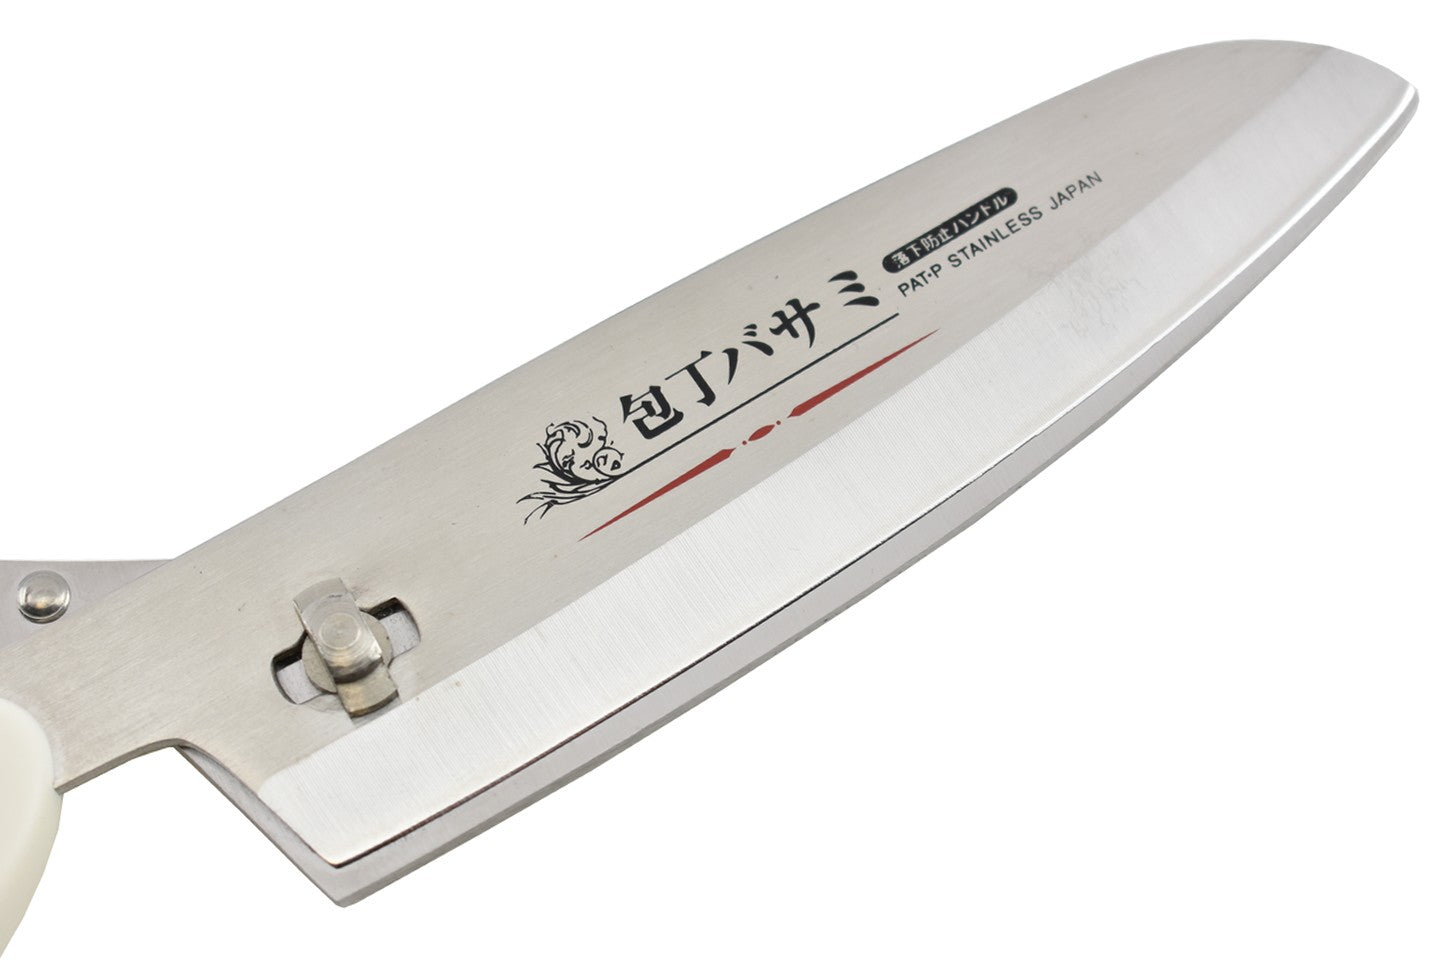 SIZOHS01 - Ciseaux de cuisine japonais détachables en acier inoxydable